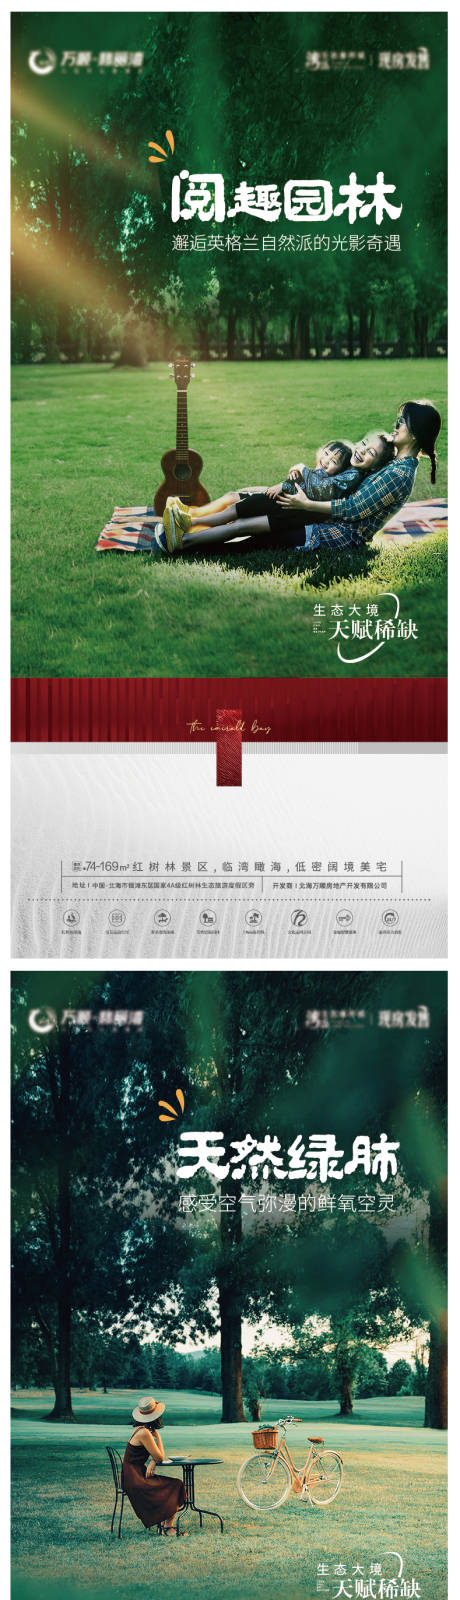 文旅地产园林景观系列海报